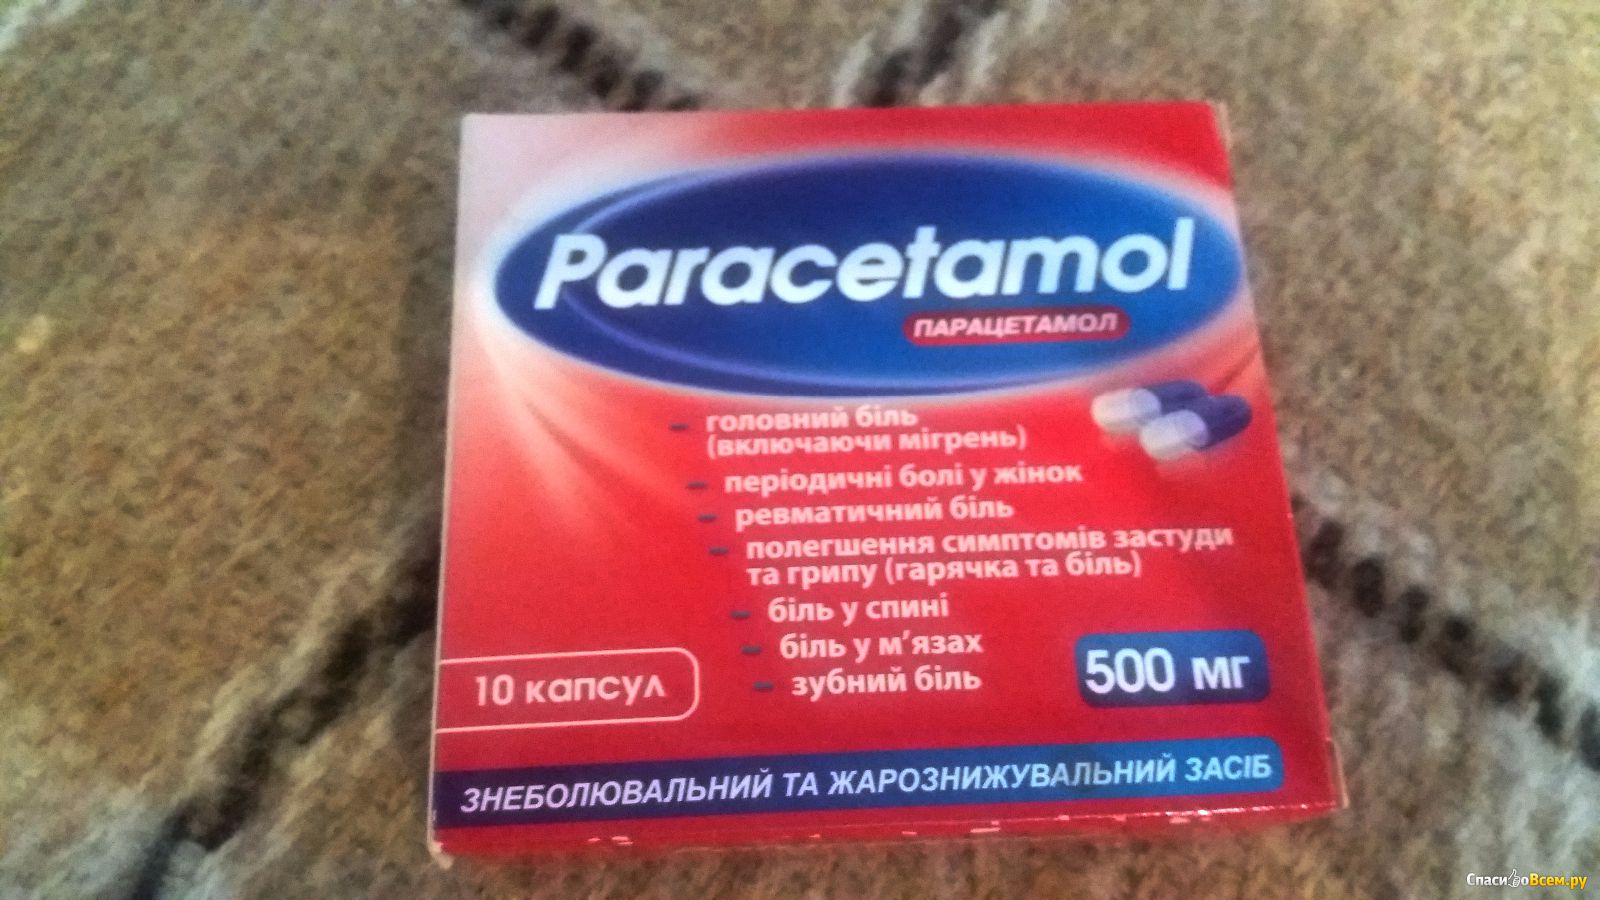 Можно ли от головной боли выпить парацетамол. Парацетамол. Парацетамол фото. Парацетамол гель. Турецкий парацетамол фото.